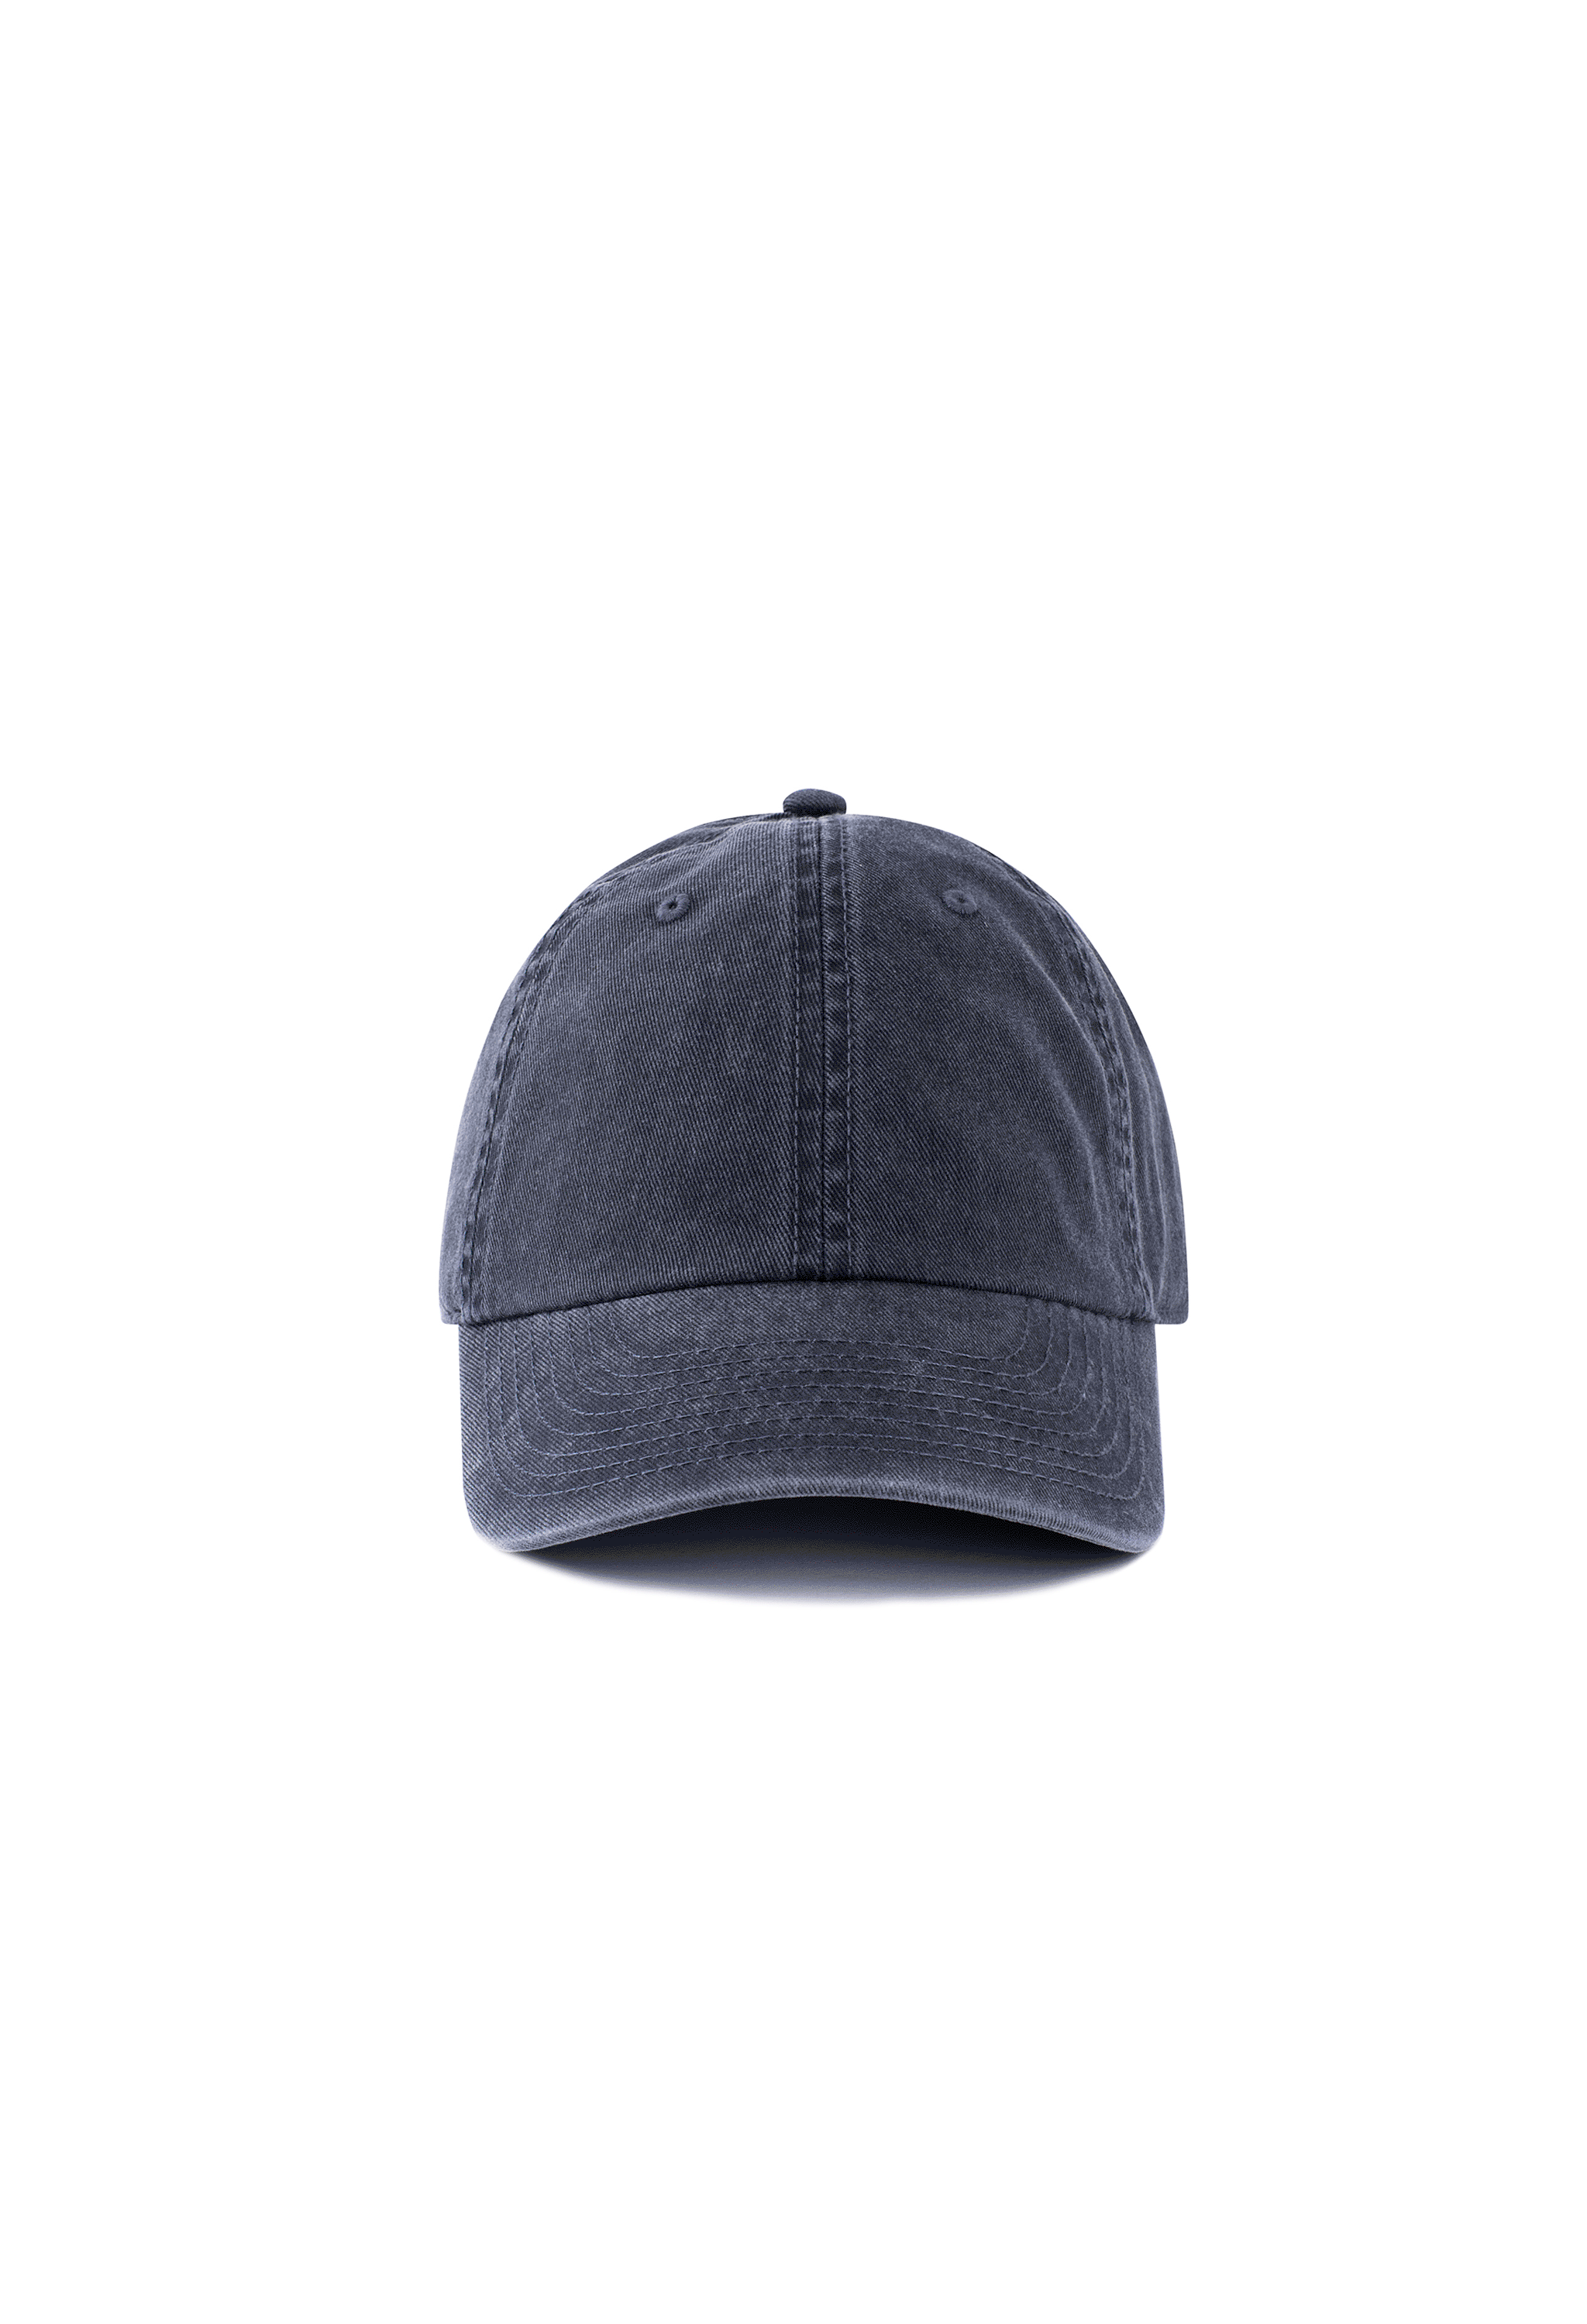 Black Cap (Custom Option)